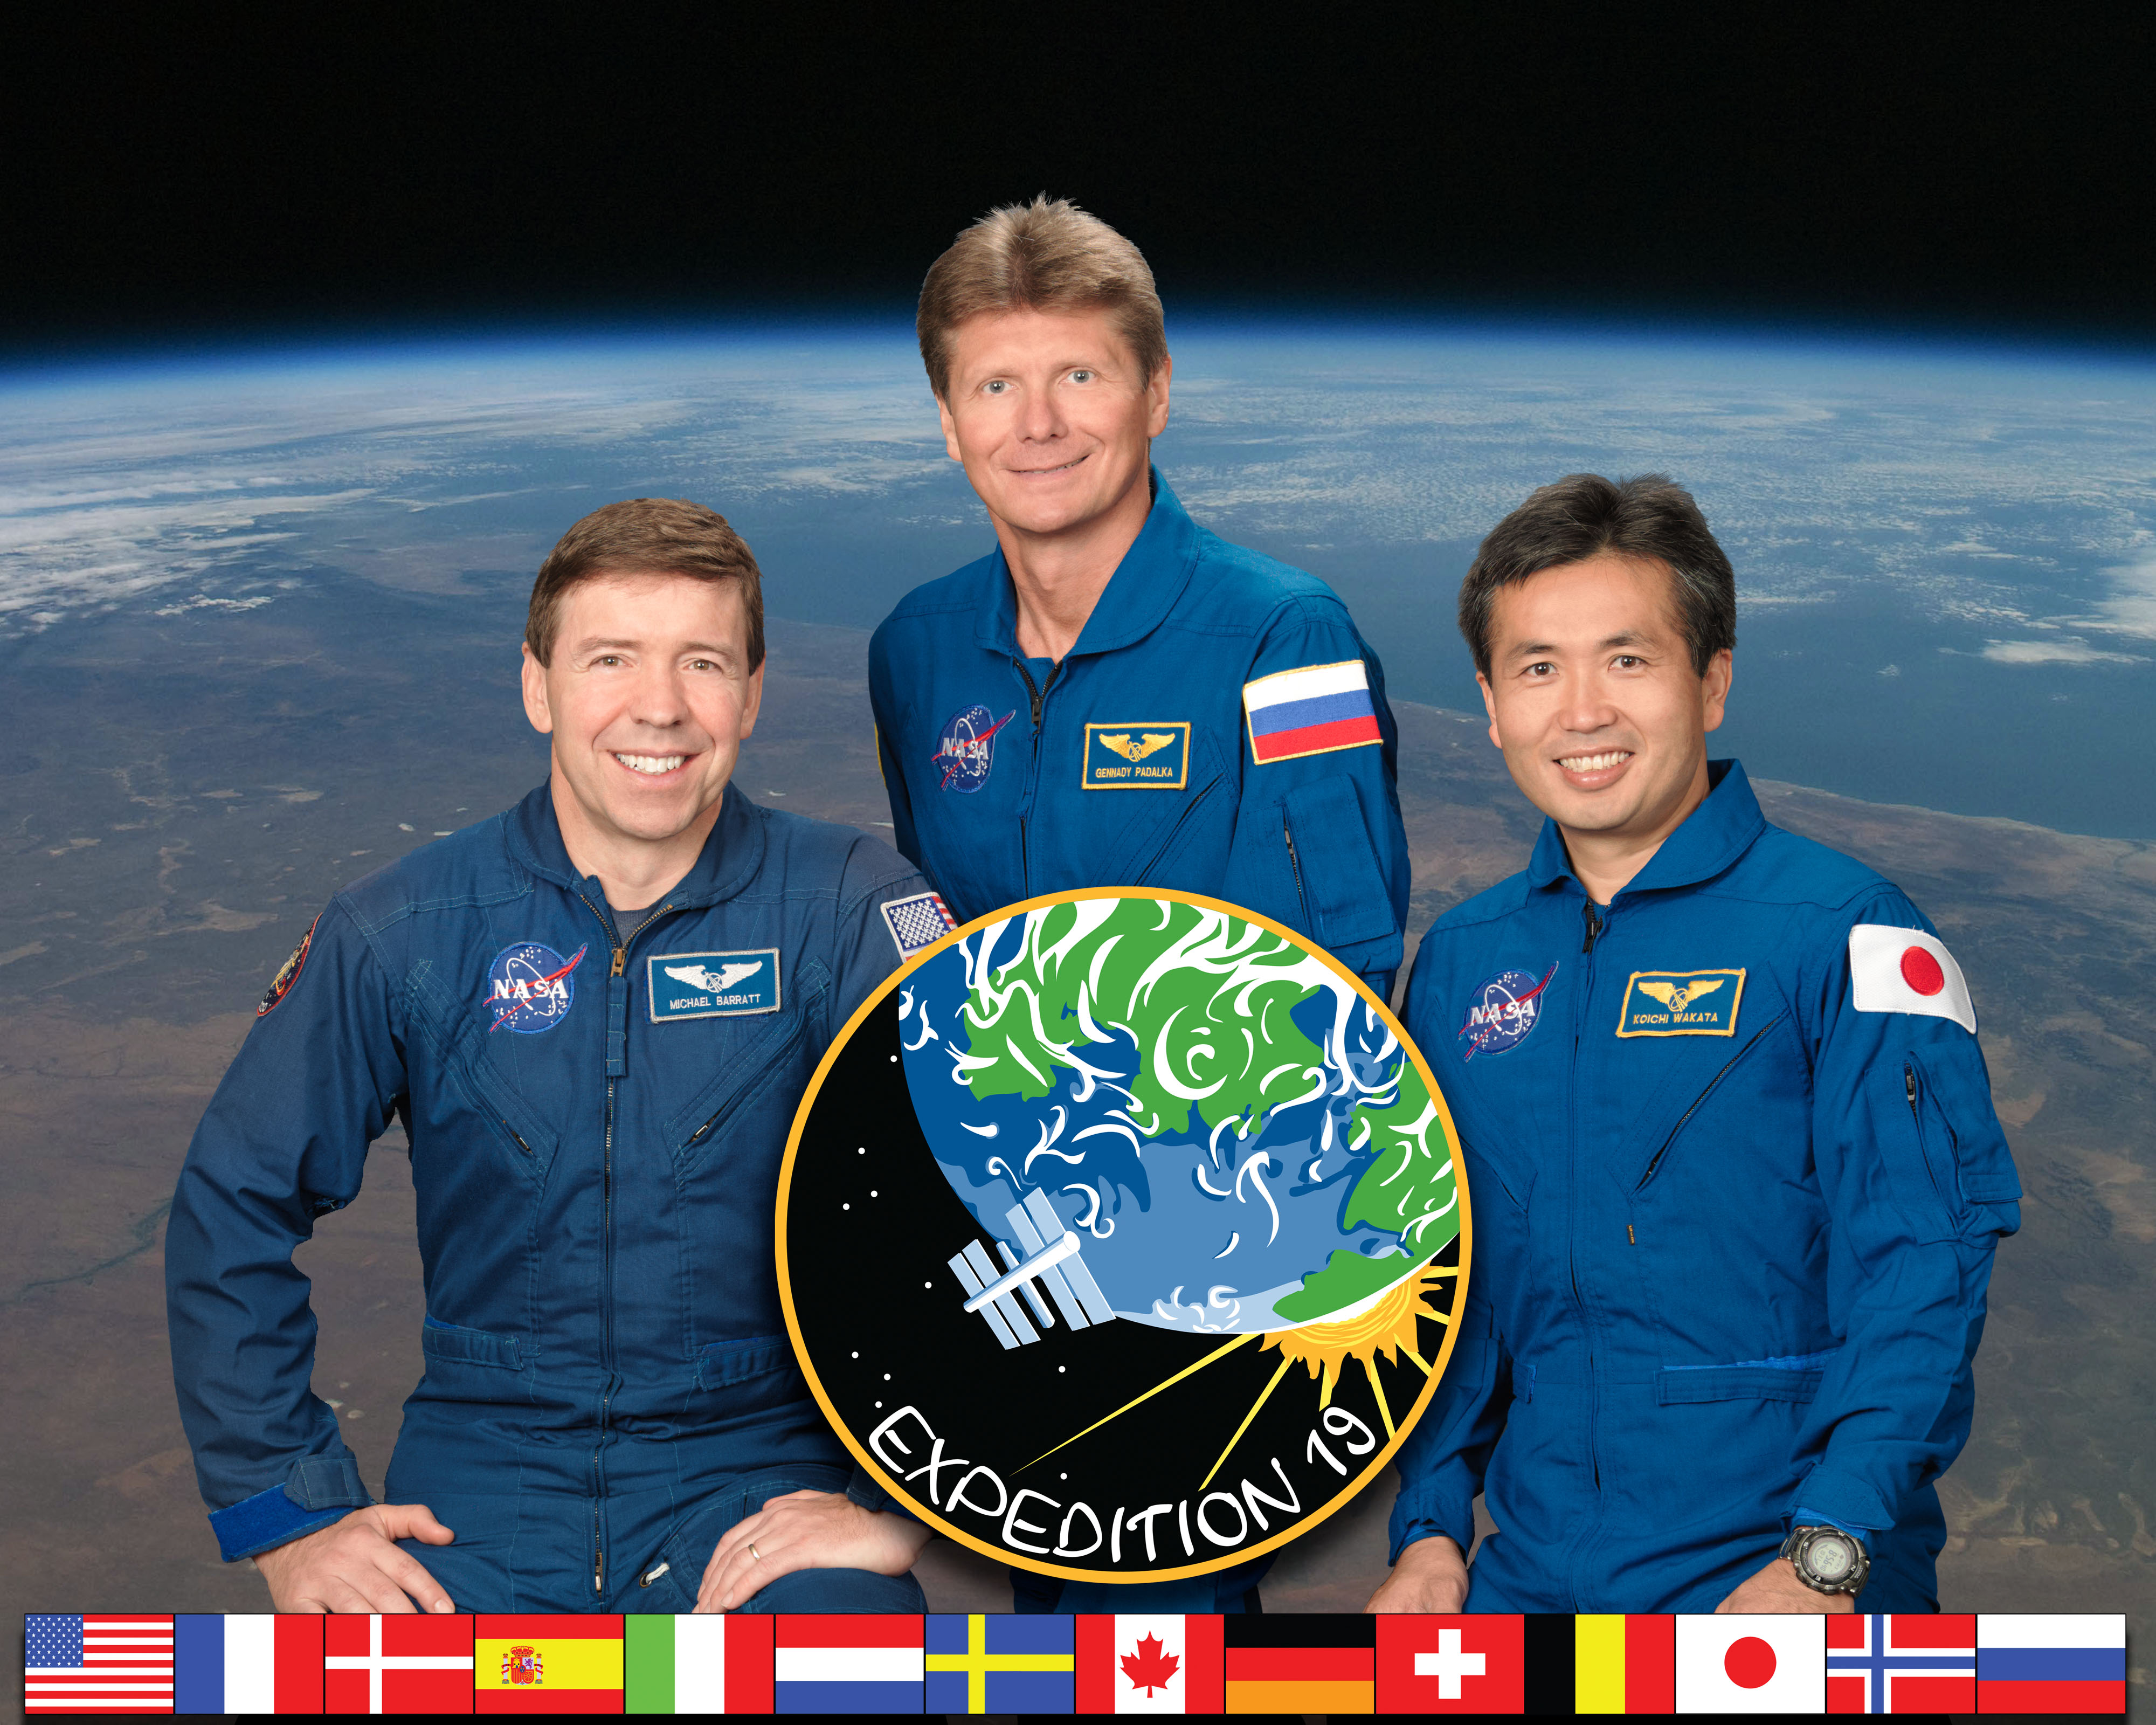 Expedition 19 crew portrait